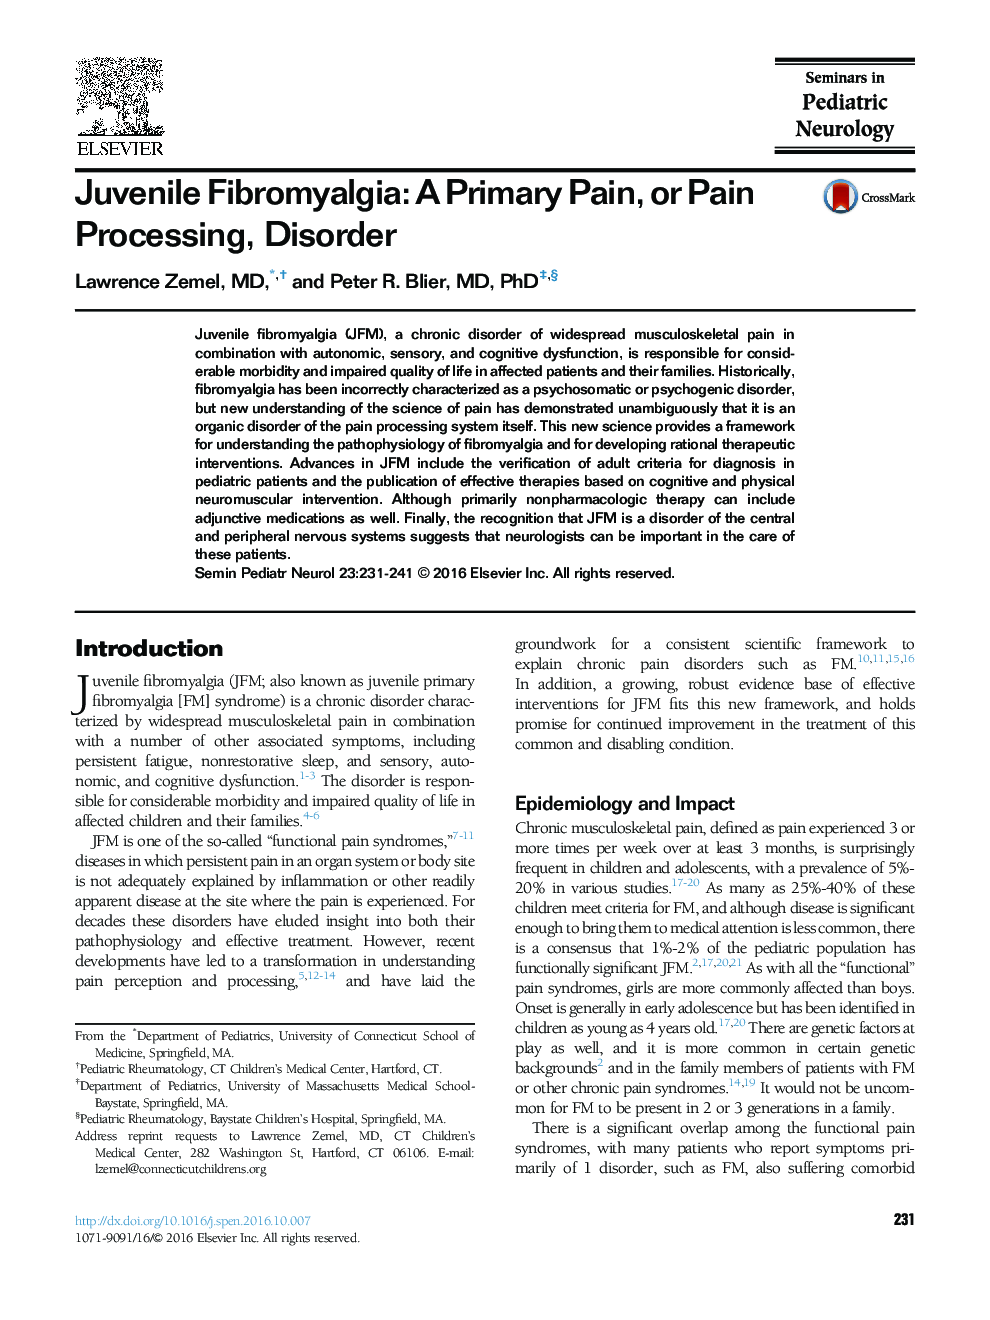 فیبرومیالژی نوجوان: درد اولیه یا اختلال در پردازش درد 